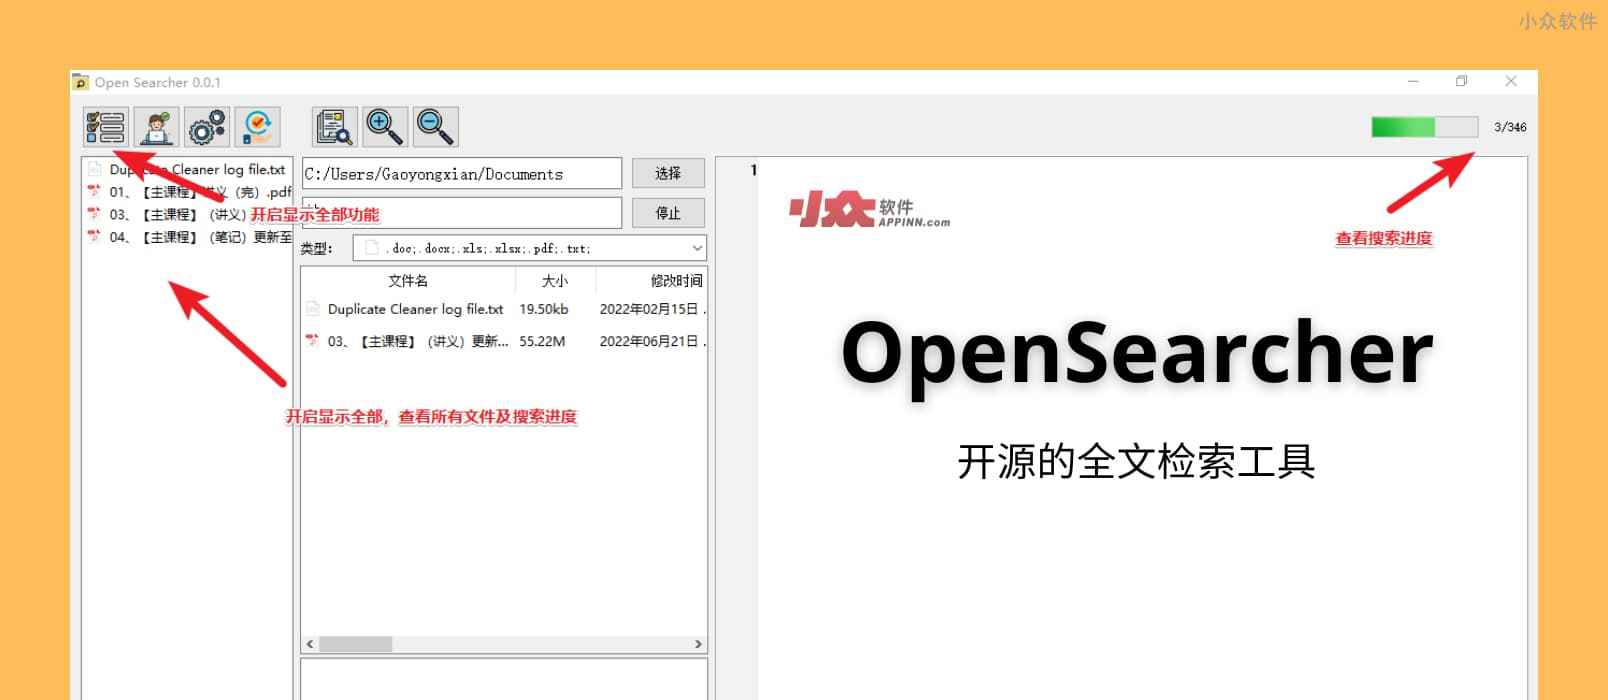 OpenSearcher - 开源的全文搜索工具：支持 Word、PPT、PDF，以及电子书 ePub、Mobi 等格式[Windows]